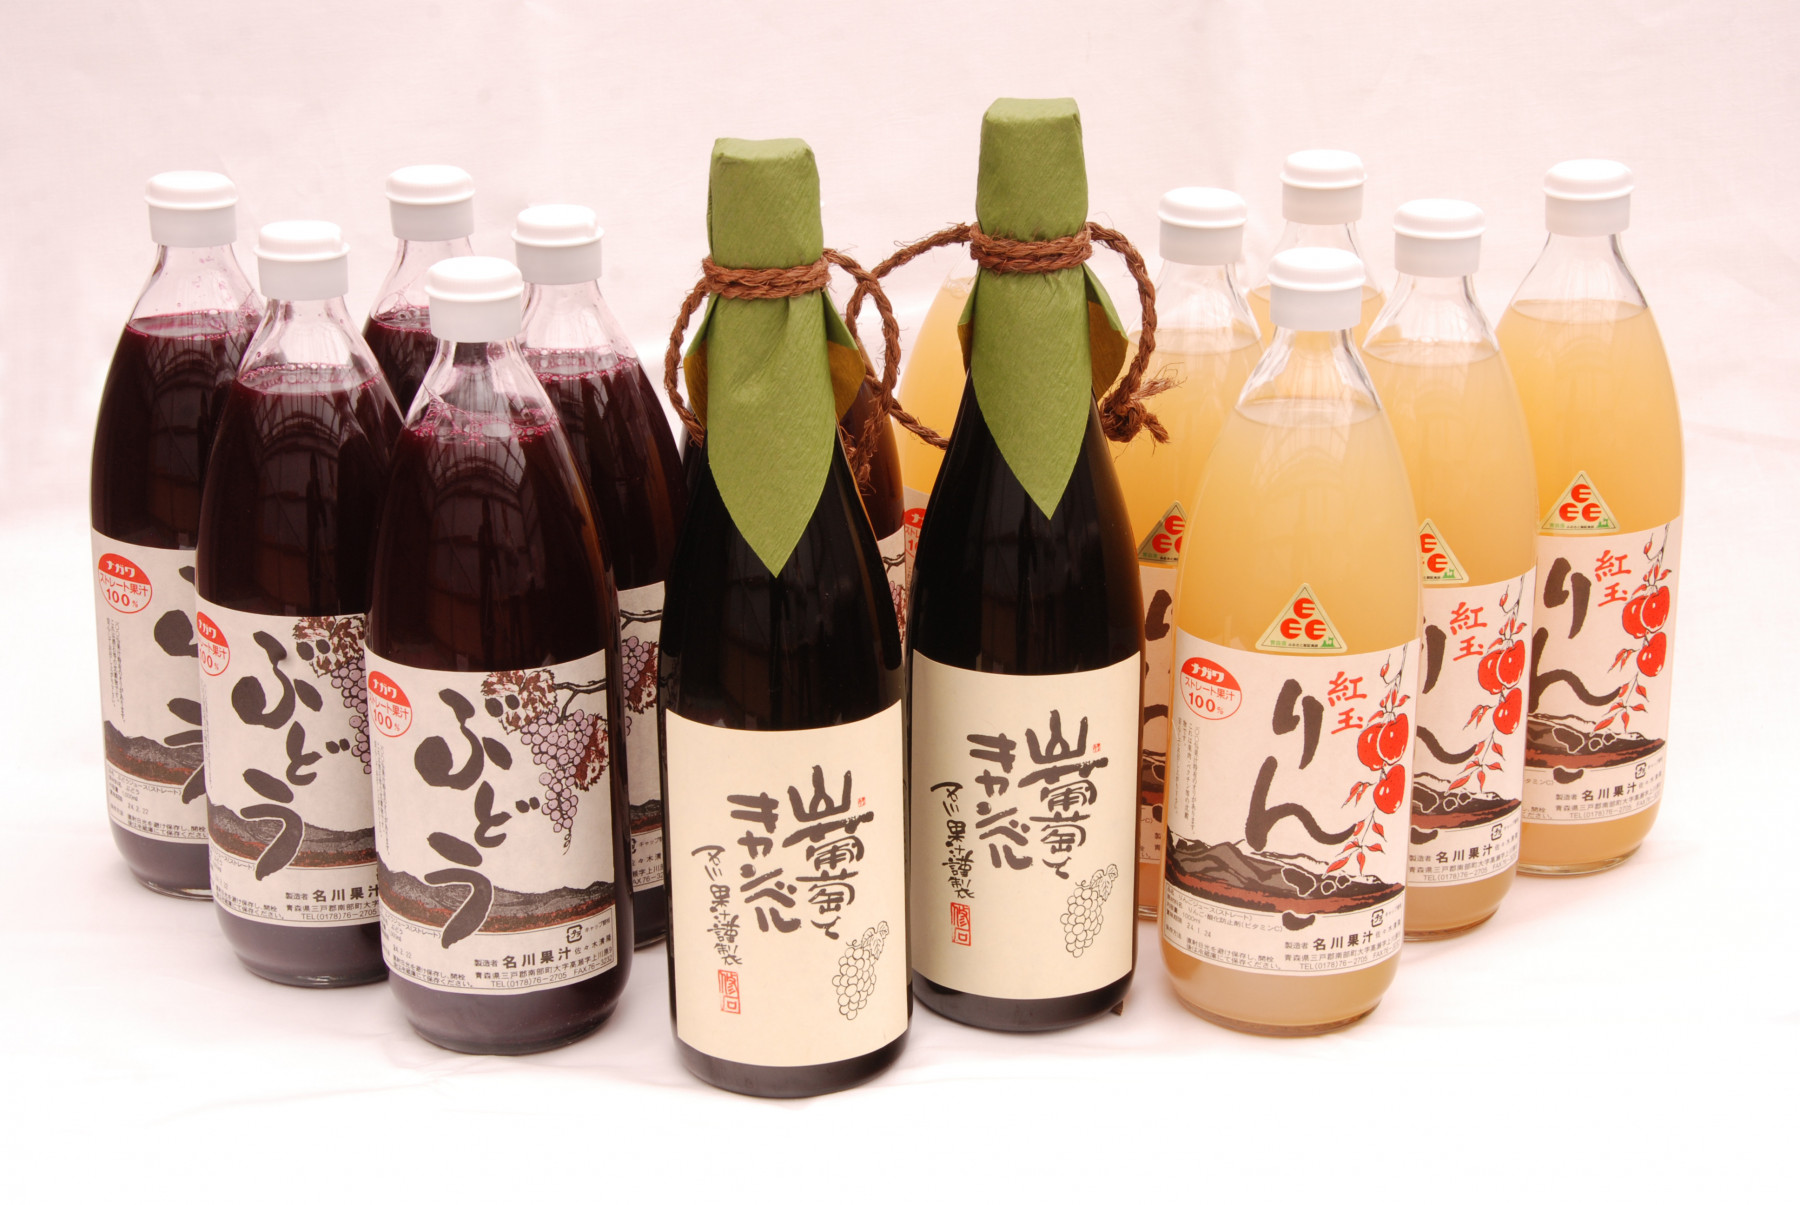 Handmde Juice Factory
名 川 果 汁